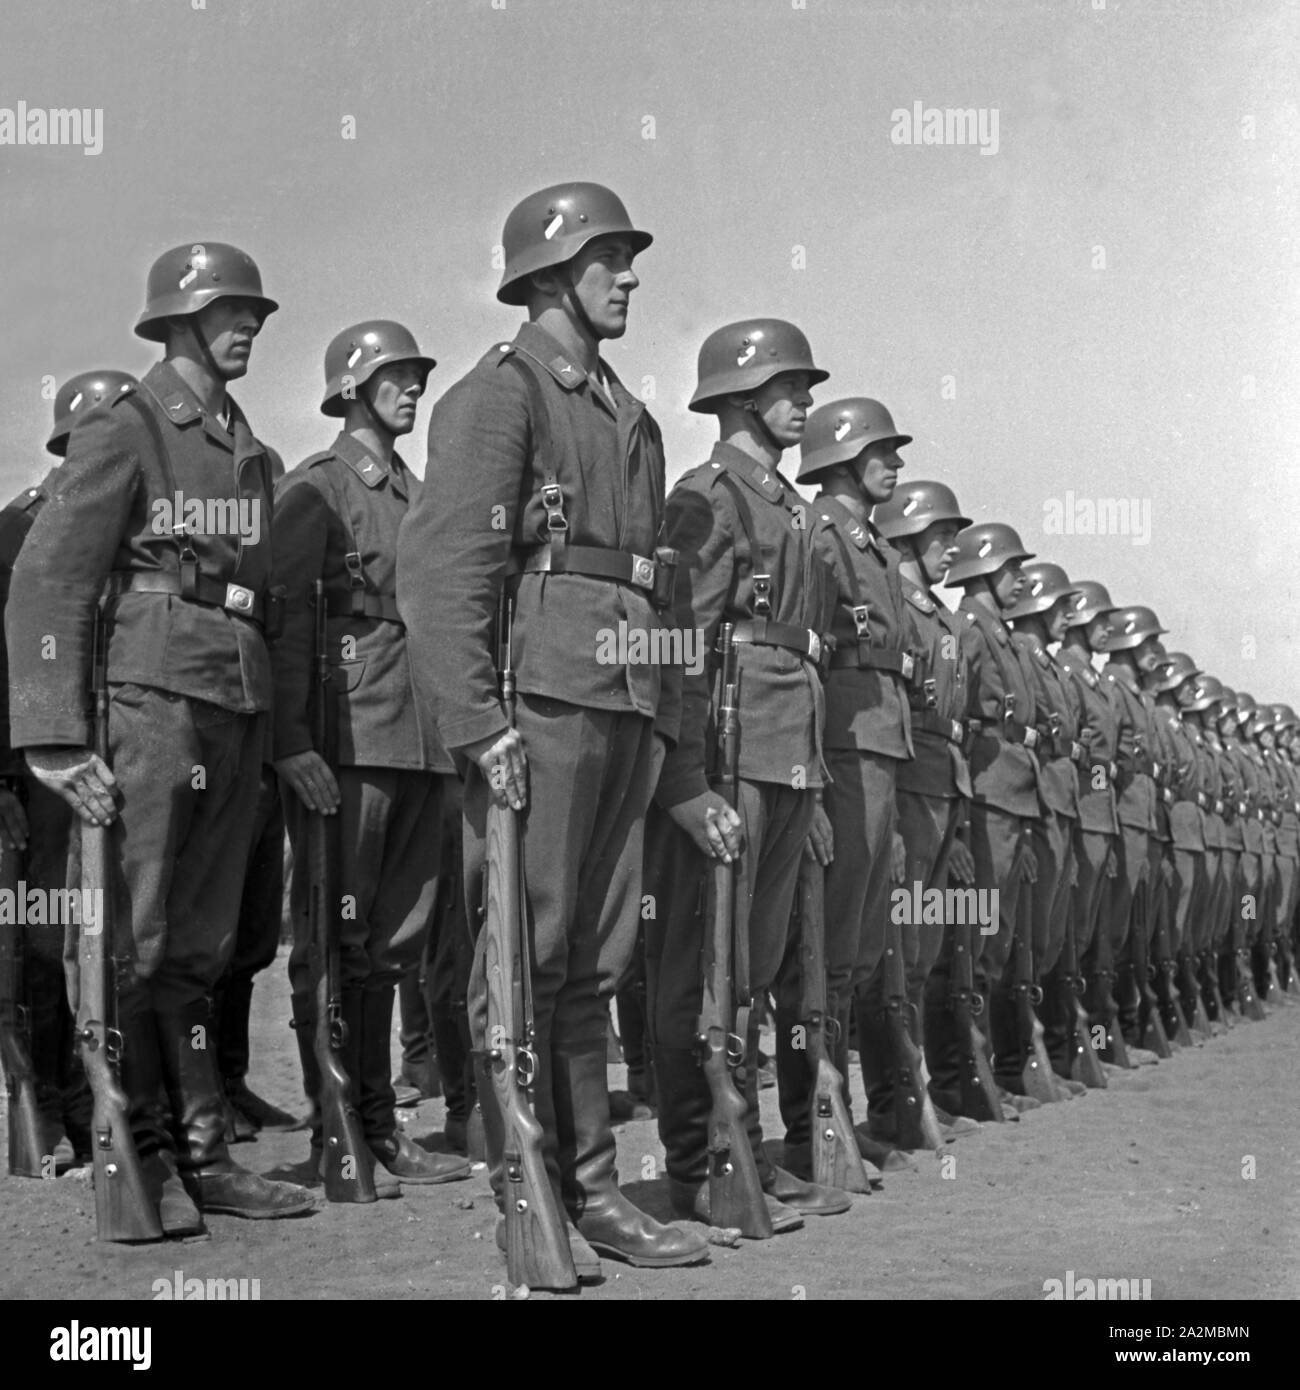 Kompanie einer Luftnachrichten Abteilung angetreten, Deutschland 1940. Company of a signal corps lined up, Germany 1940. Stock Photo